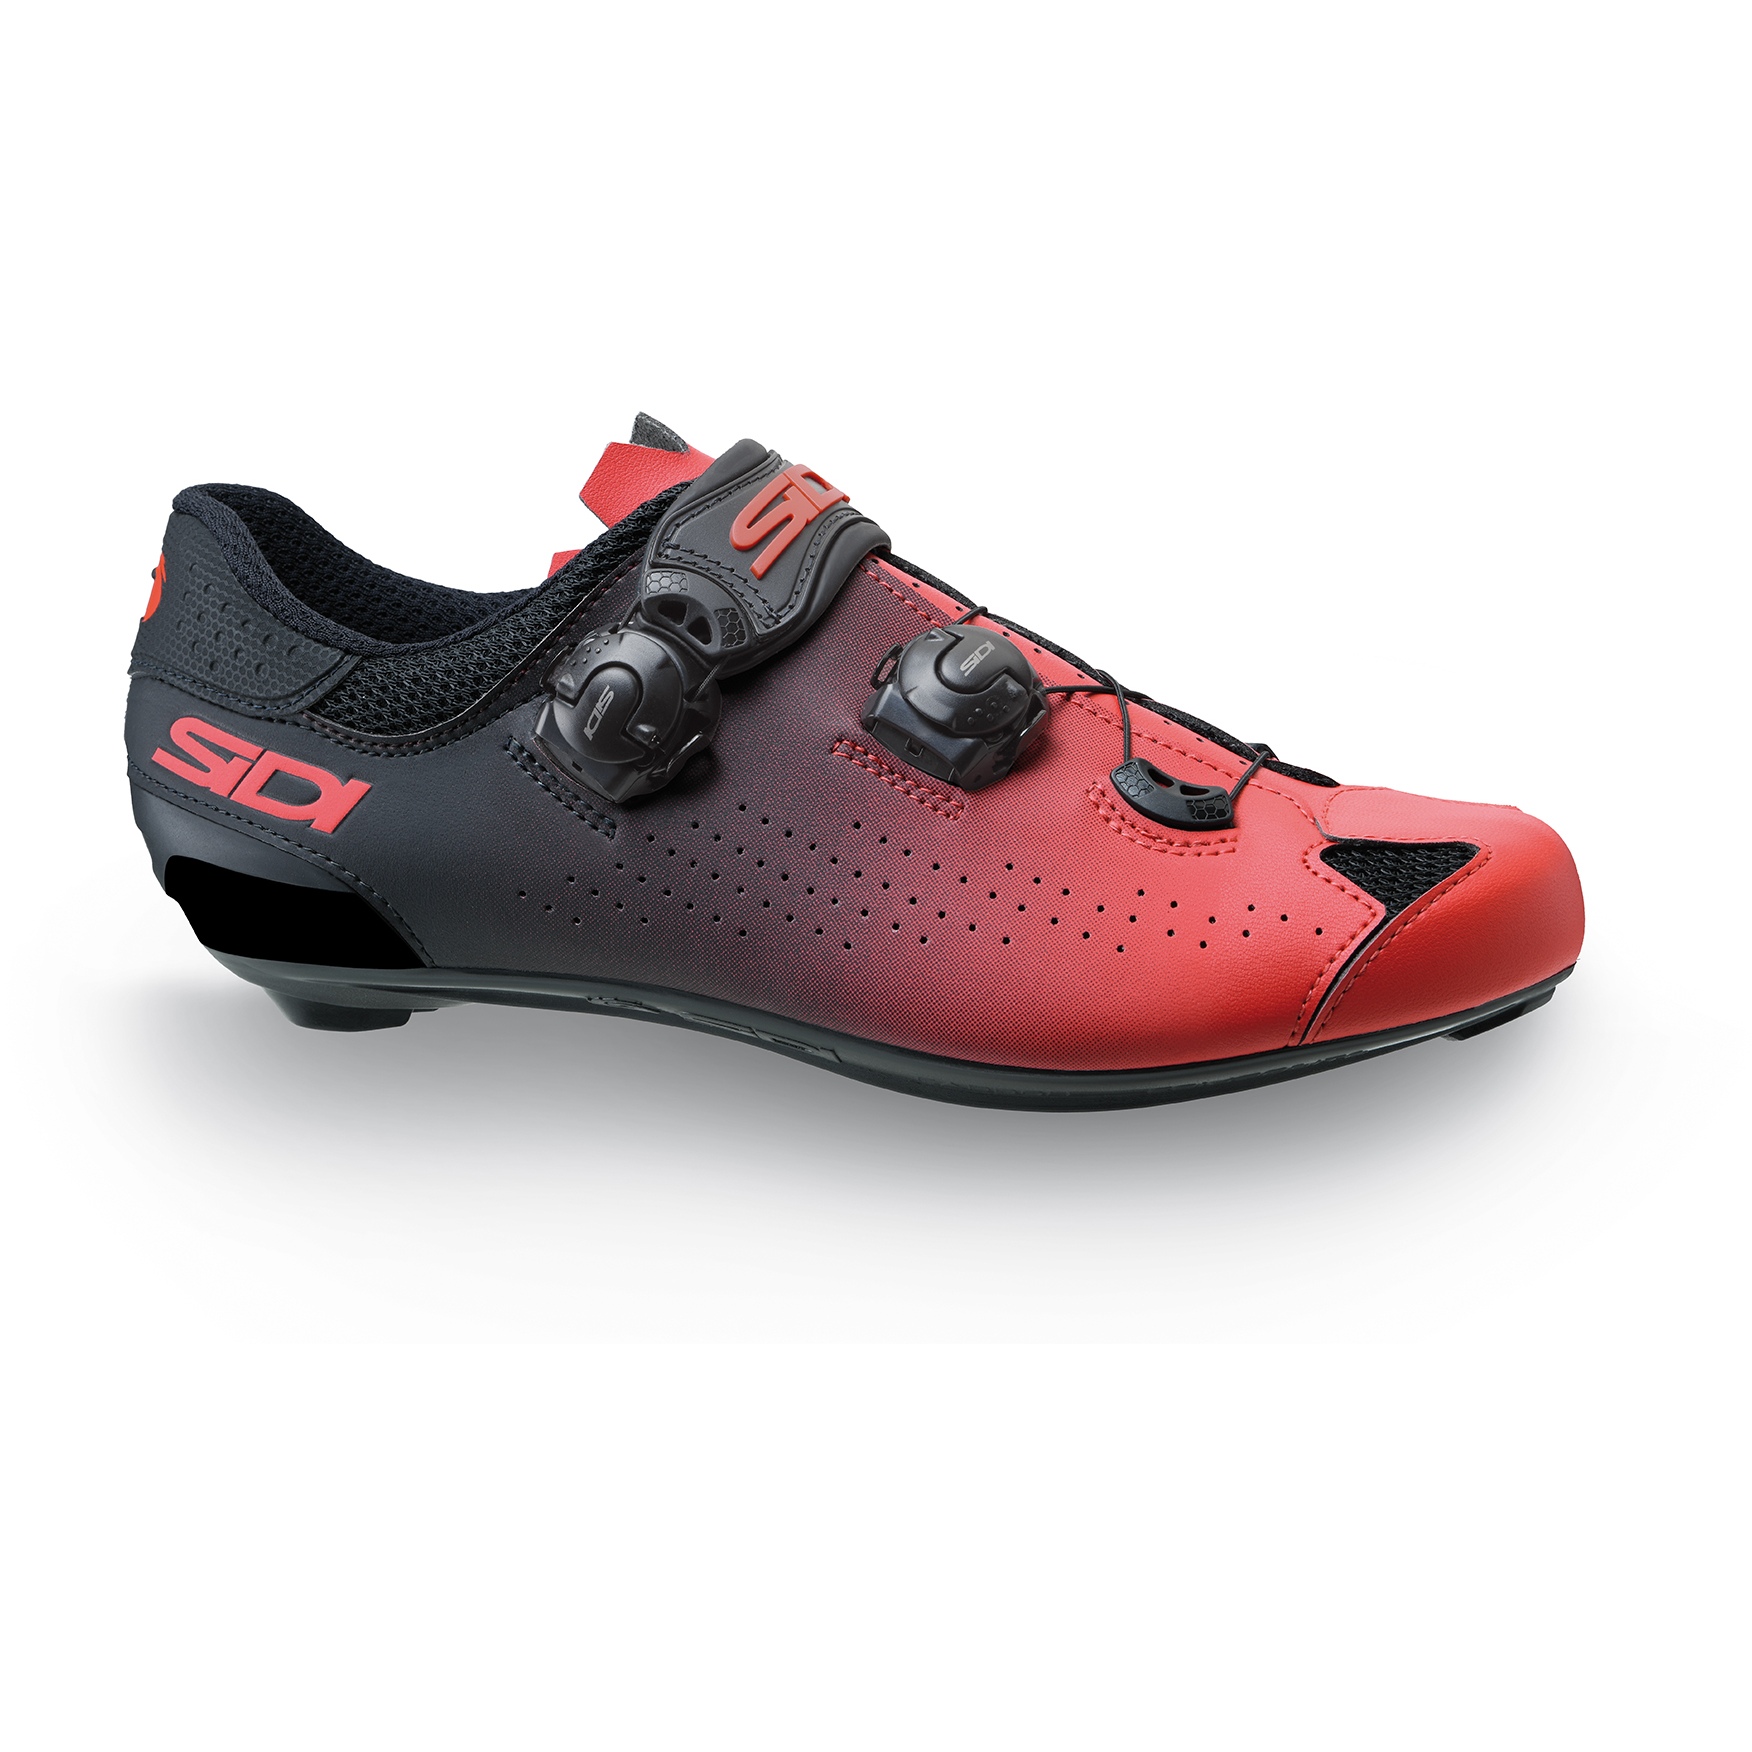 Produktbild von Sidi Genius 10 Rennradschuhe Herren - Rot/Schwarz